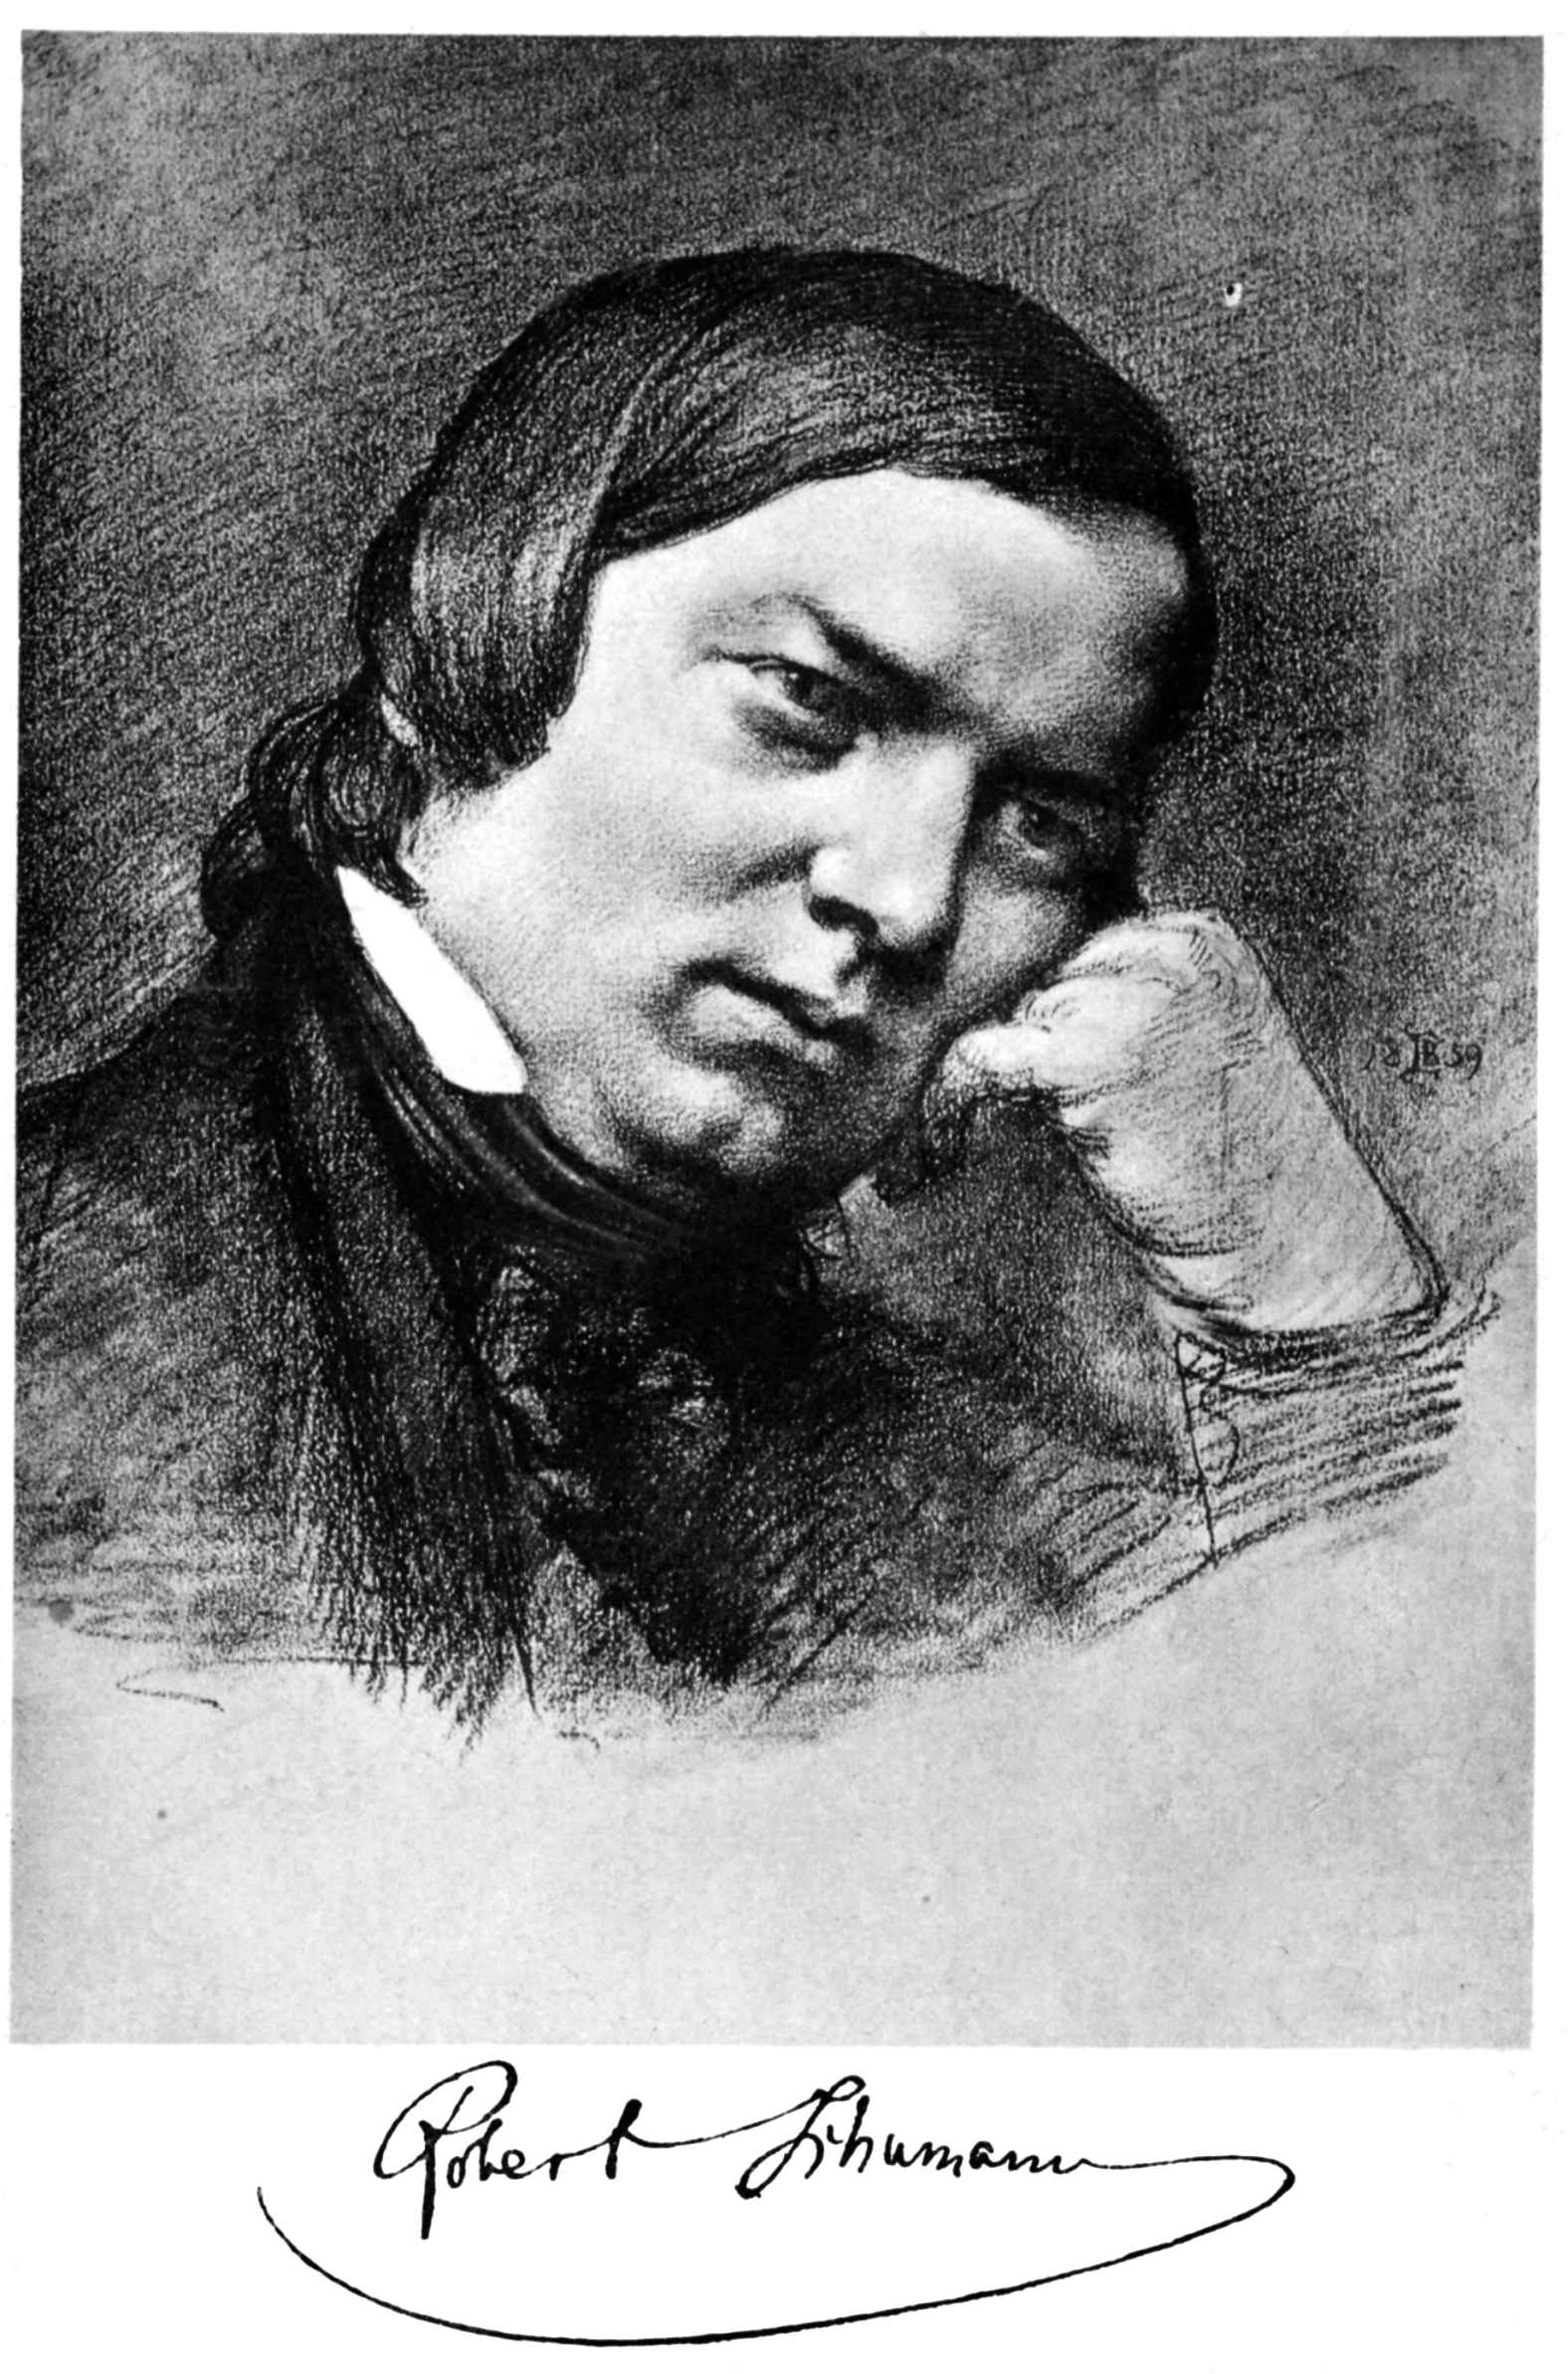 [<b>Robert Schumann</b>]⋼Nach dem Gemälde von E. Bendemann.⋼Verlag von - scum000a